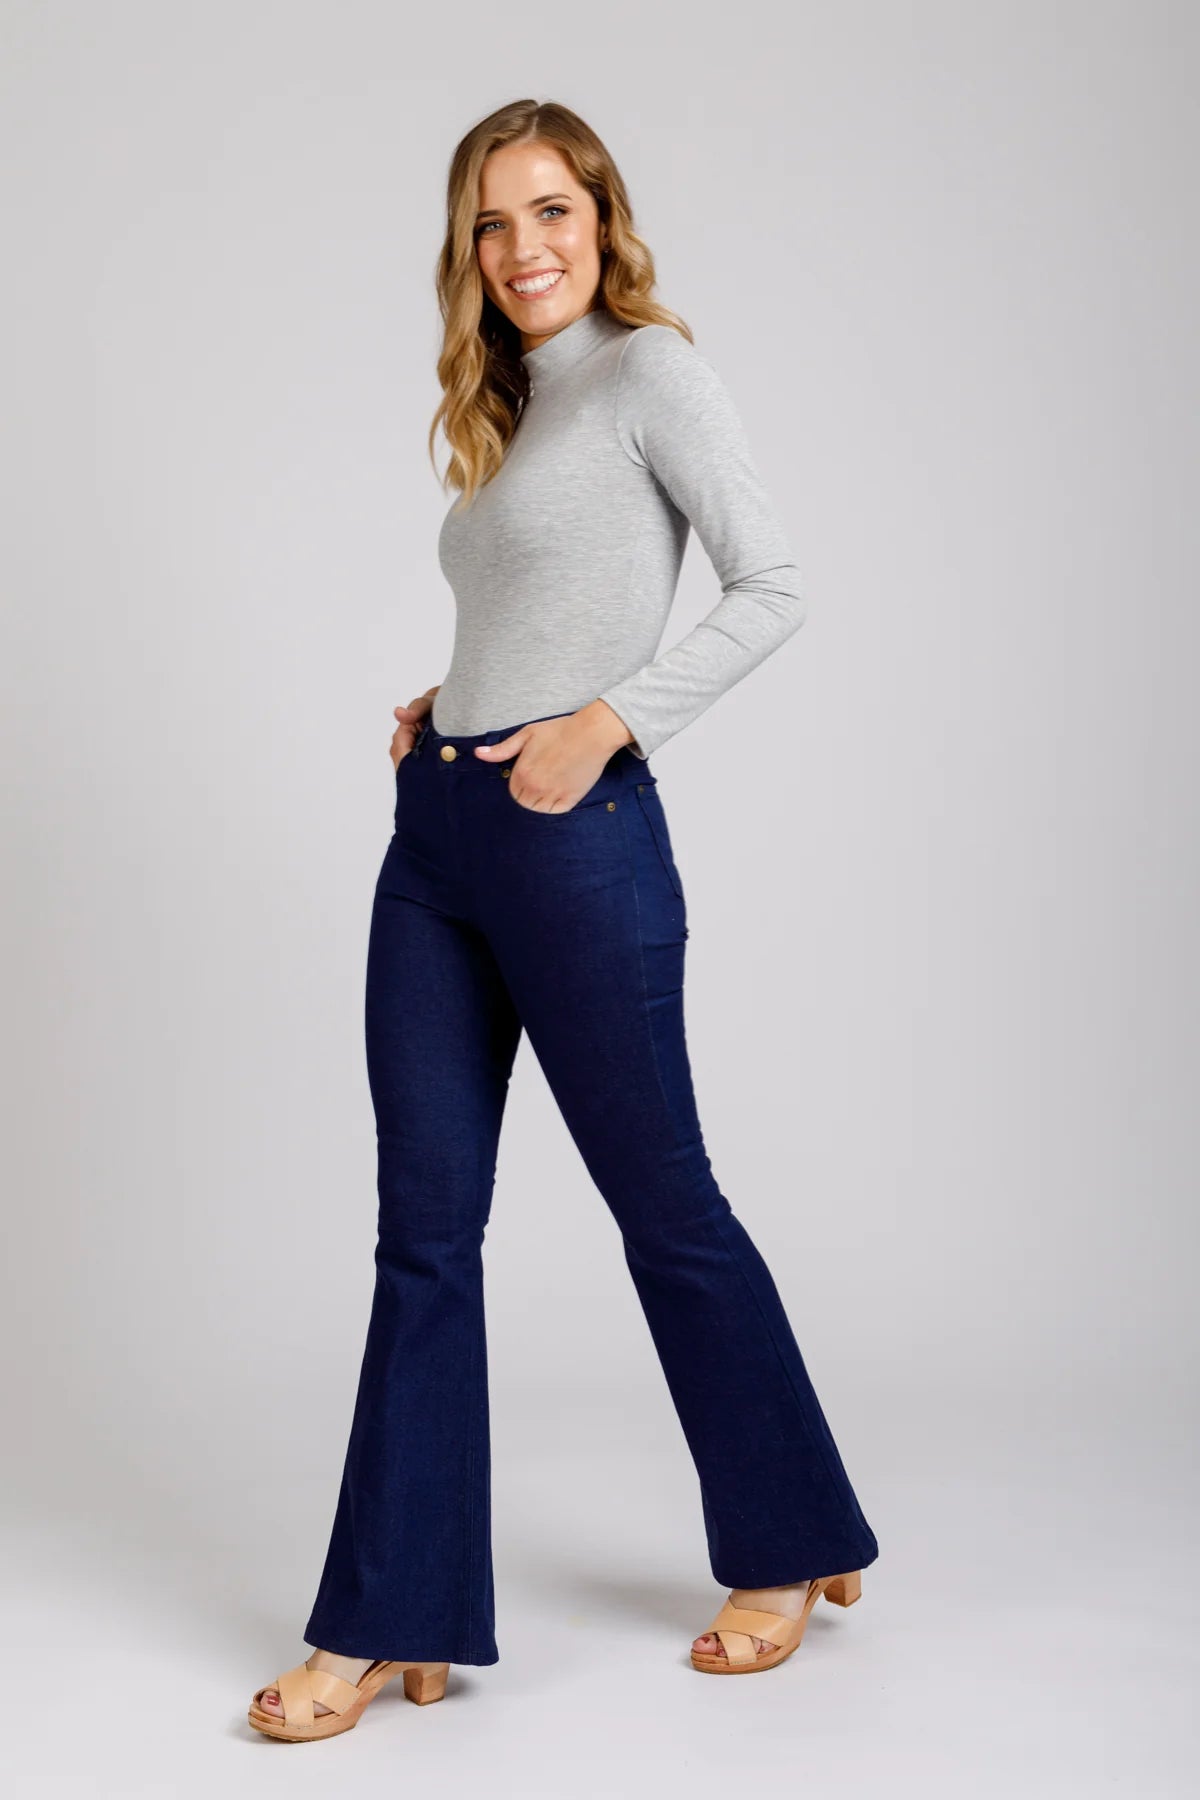 Megan Nielsen Ash Jeans